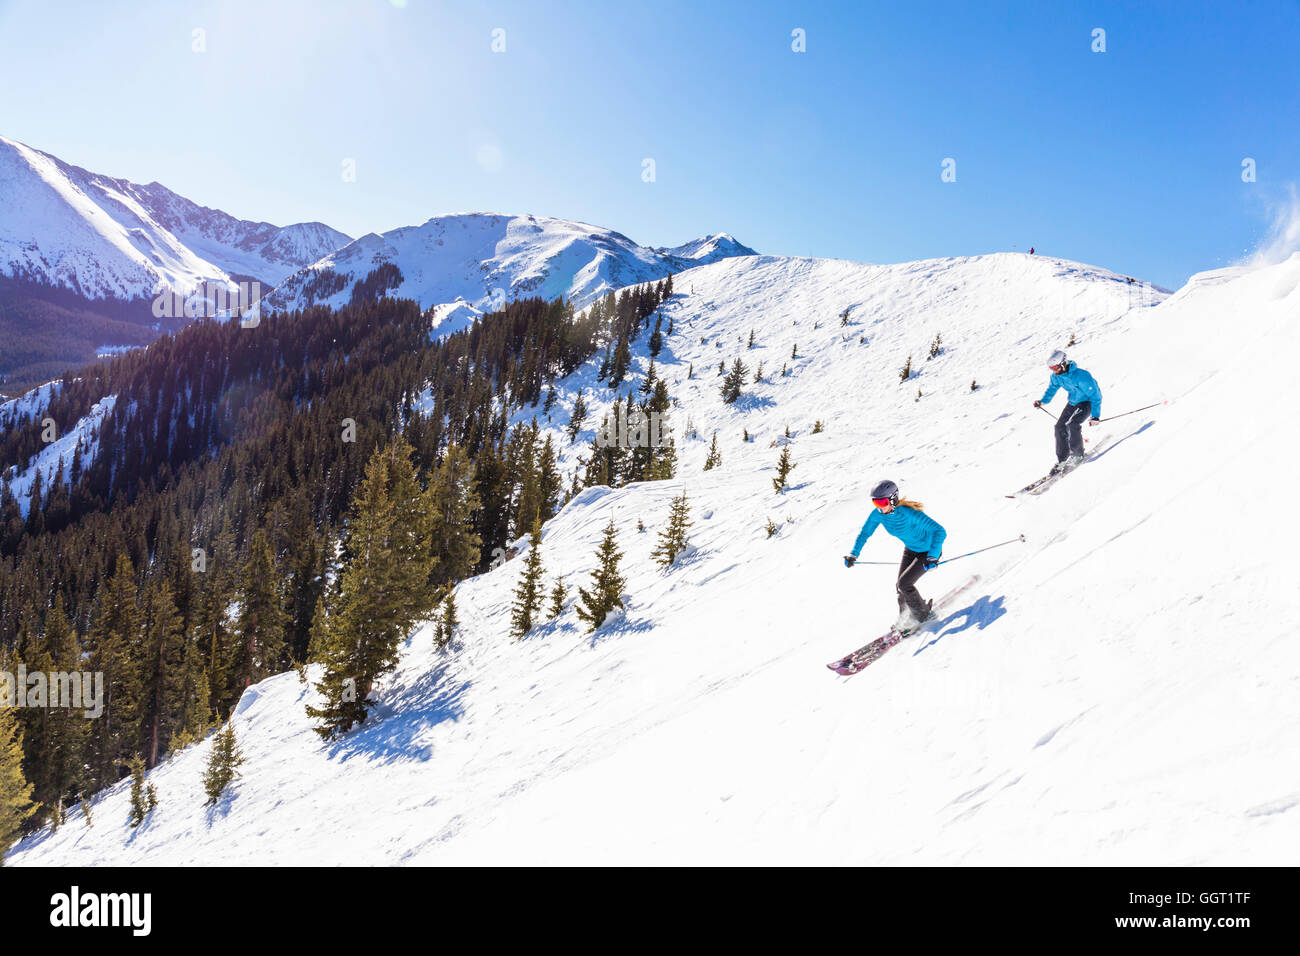 Paar Ski fahren auf verschneiten Berghang Stockfoto